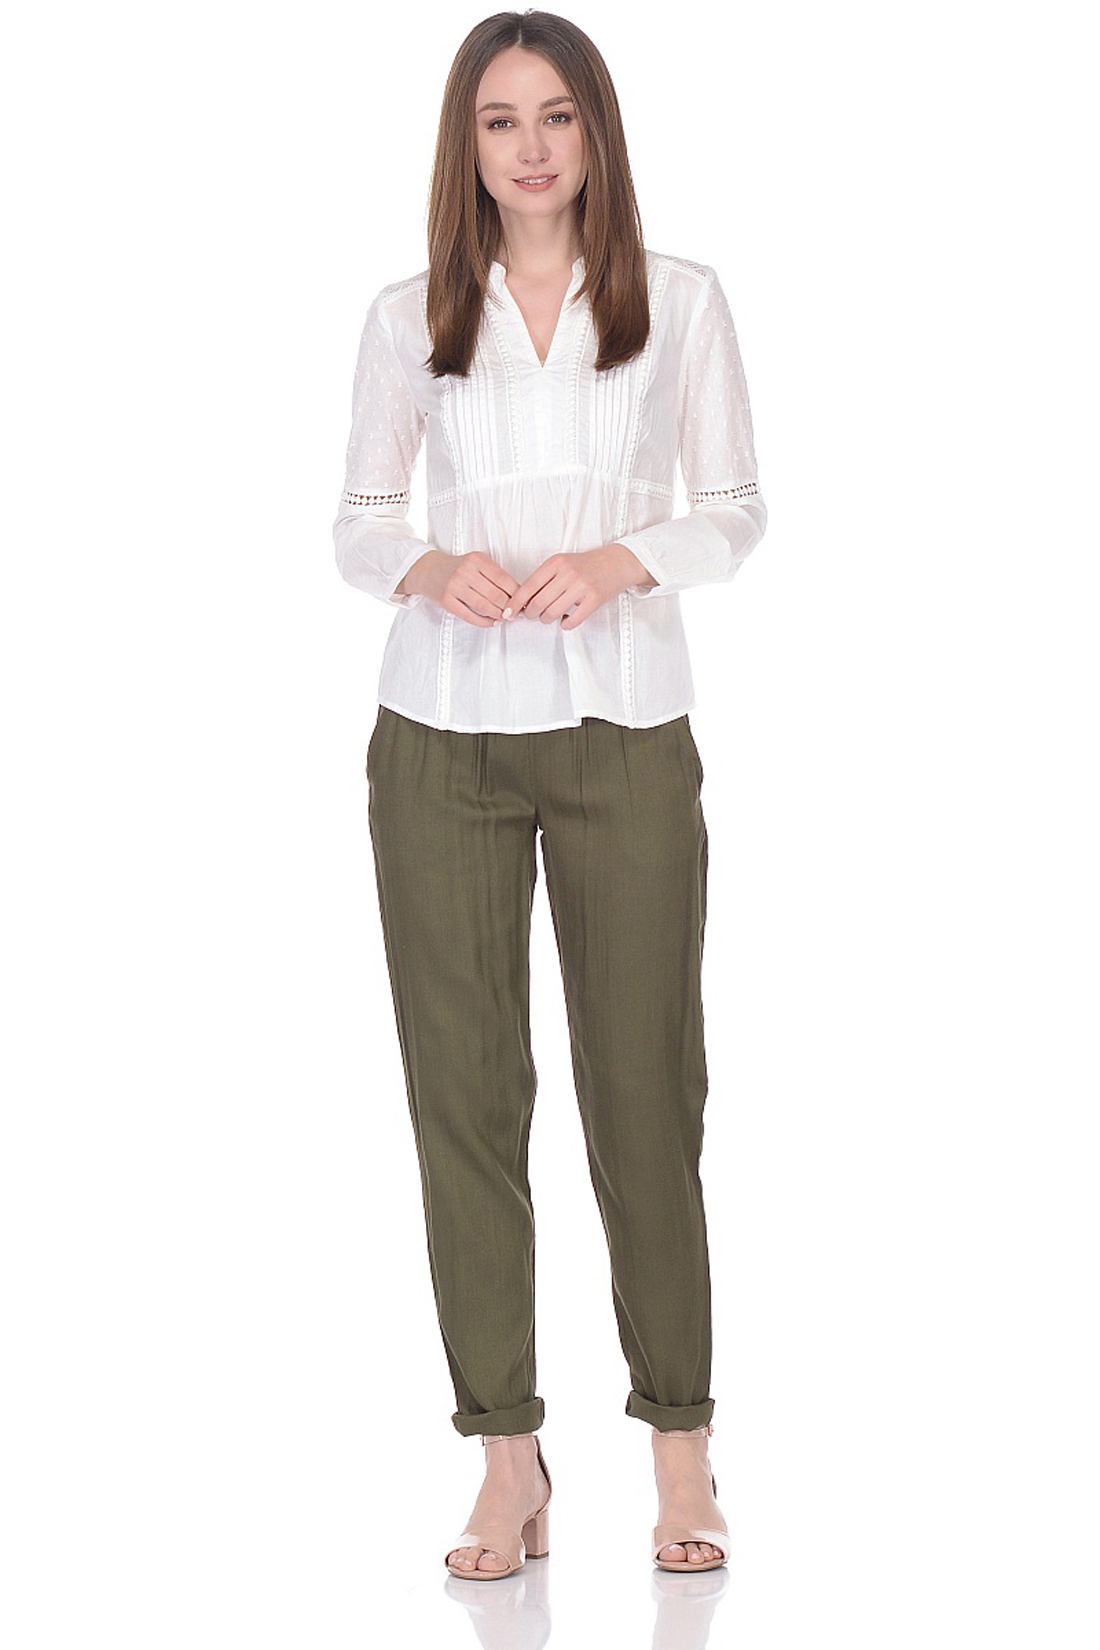 Зауженные брюки из вискозы (арт. baon B298047), размер XL, цвет зеленый Зауженные брюки из вискозы (арт. baon B298047) - фото 3